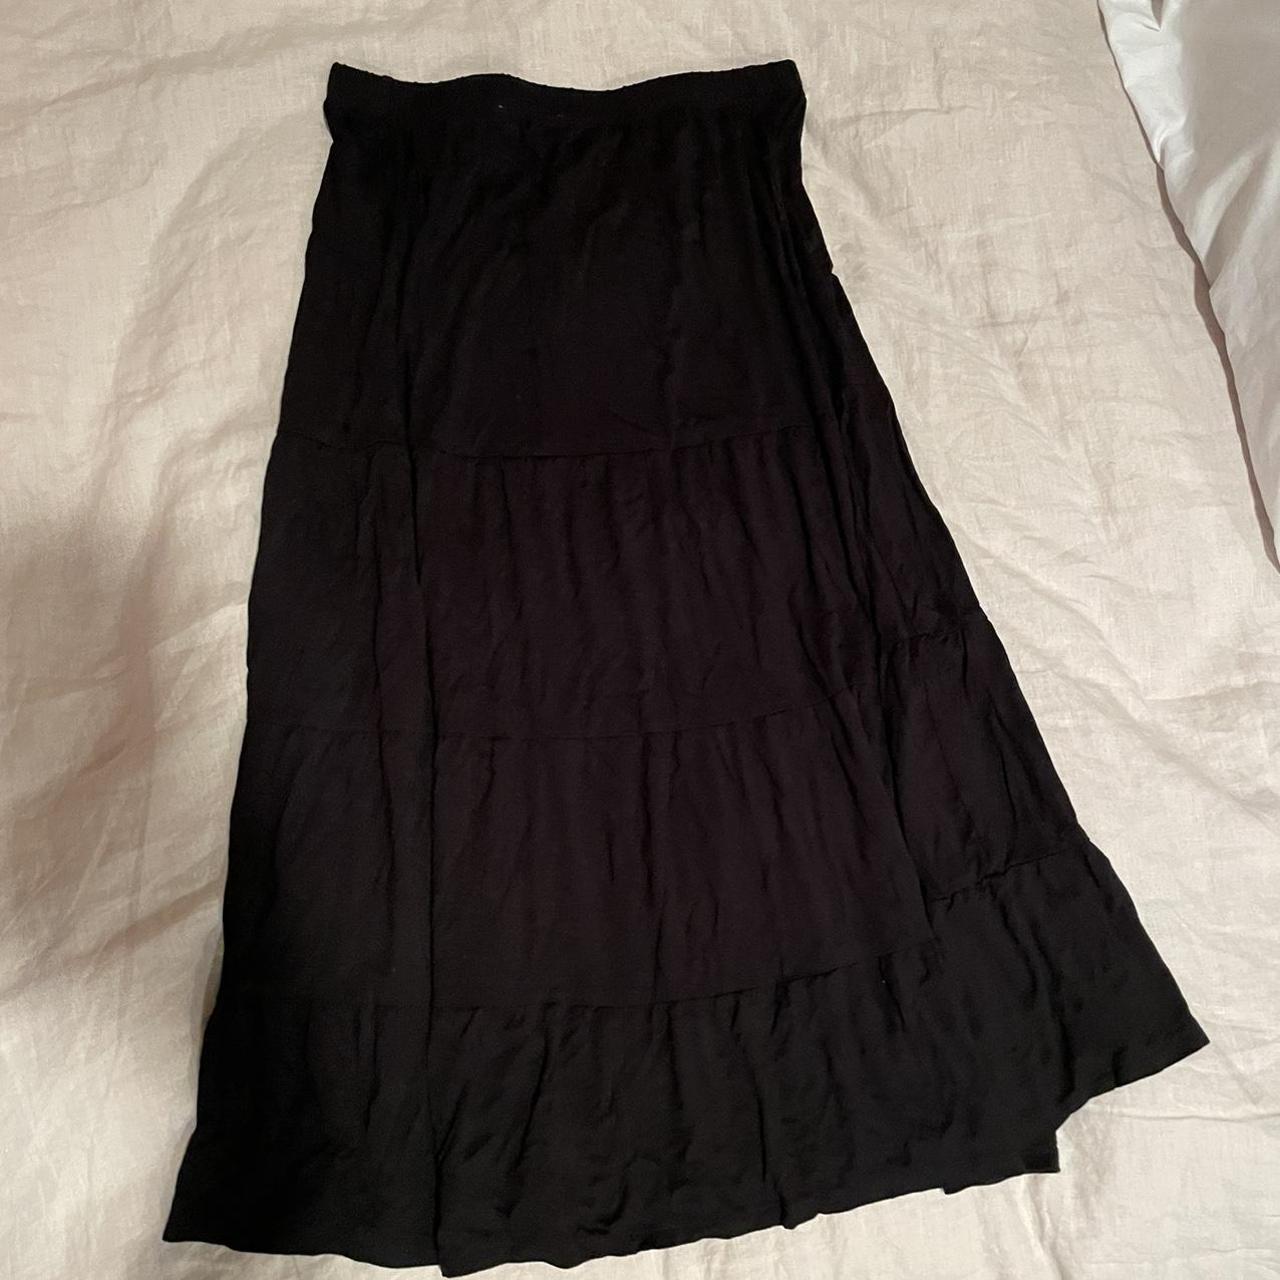 Long black philosophy skirt #90s Long skirt... - Depop